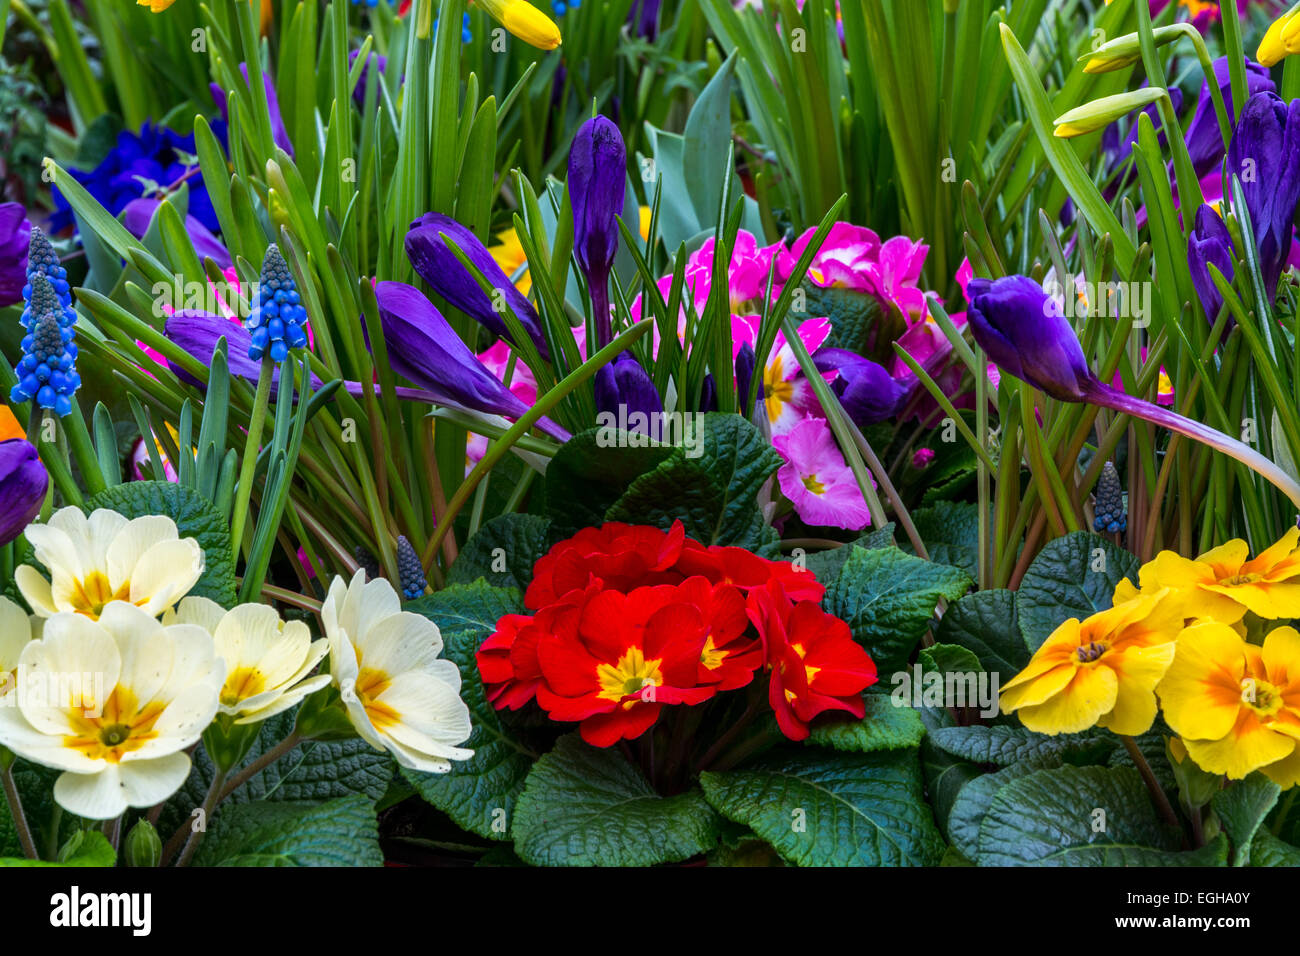 Einem sehr bunten Garten bestehend aus Primeln, Narzissen, Krokus und Trauben Hyazinthe. Stockfoto